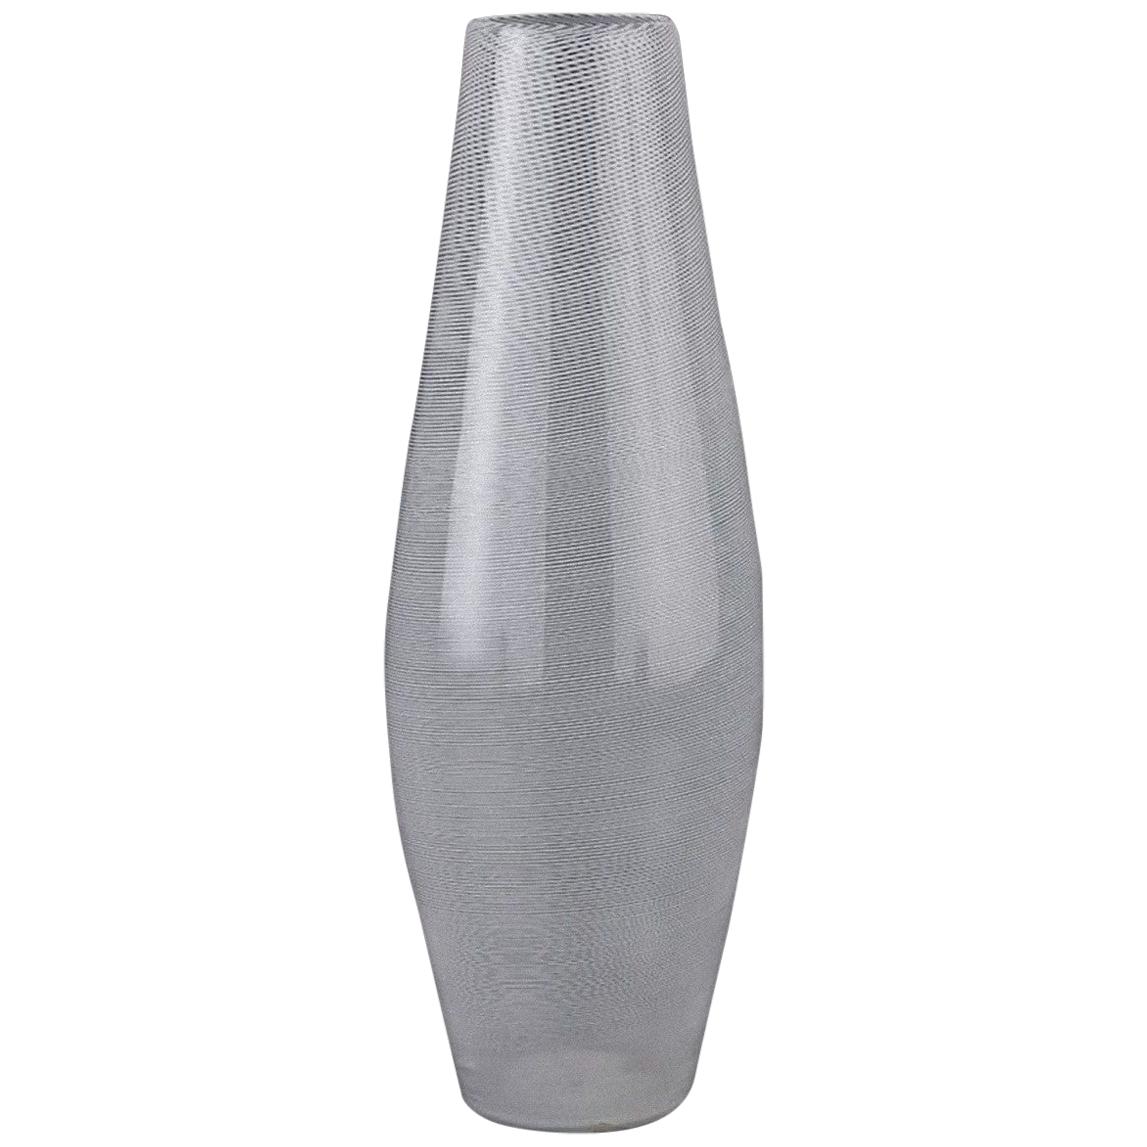 Murano Glass Vase, attributed to Carlo Scarpa for Venini, circa 1930's